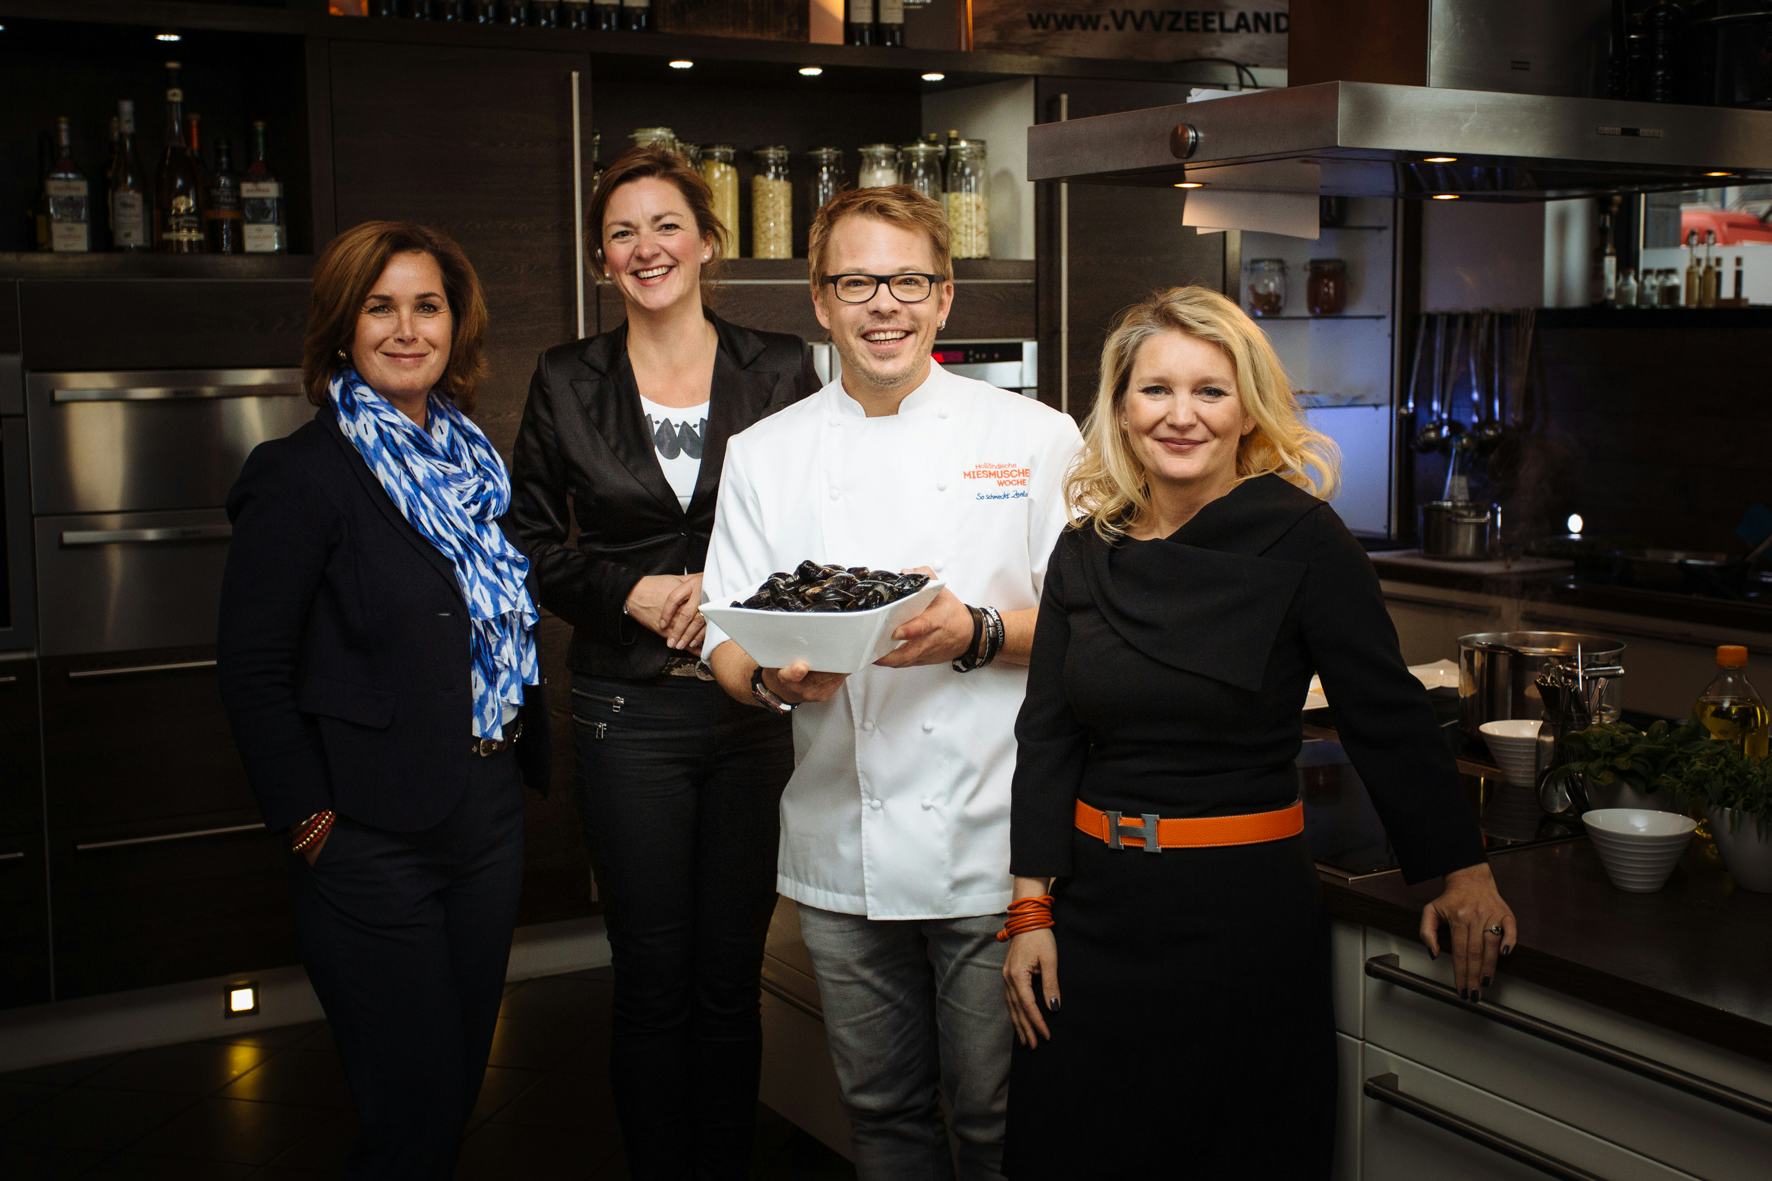 van links naar rechts: Helma Wegdam van VVV Zeeland, Christine Fijnaut van Het Nederlands Mosselbureau, Mario Kotaska, Duitse chef-kok en Anouk Susan, NBTC Duitsland